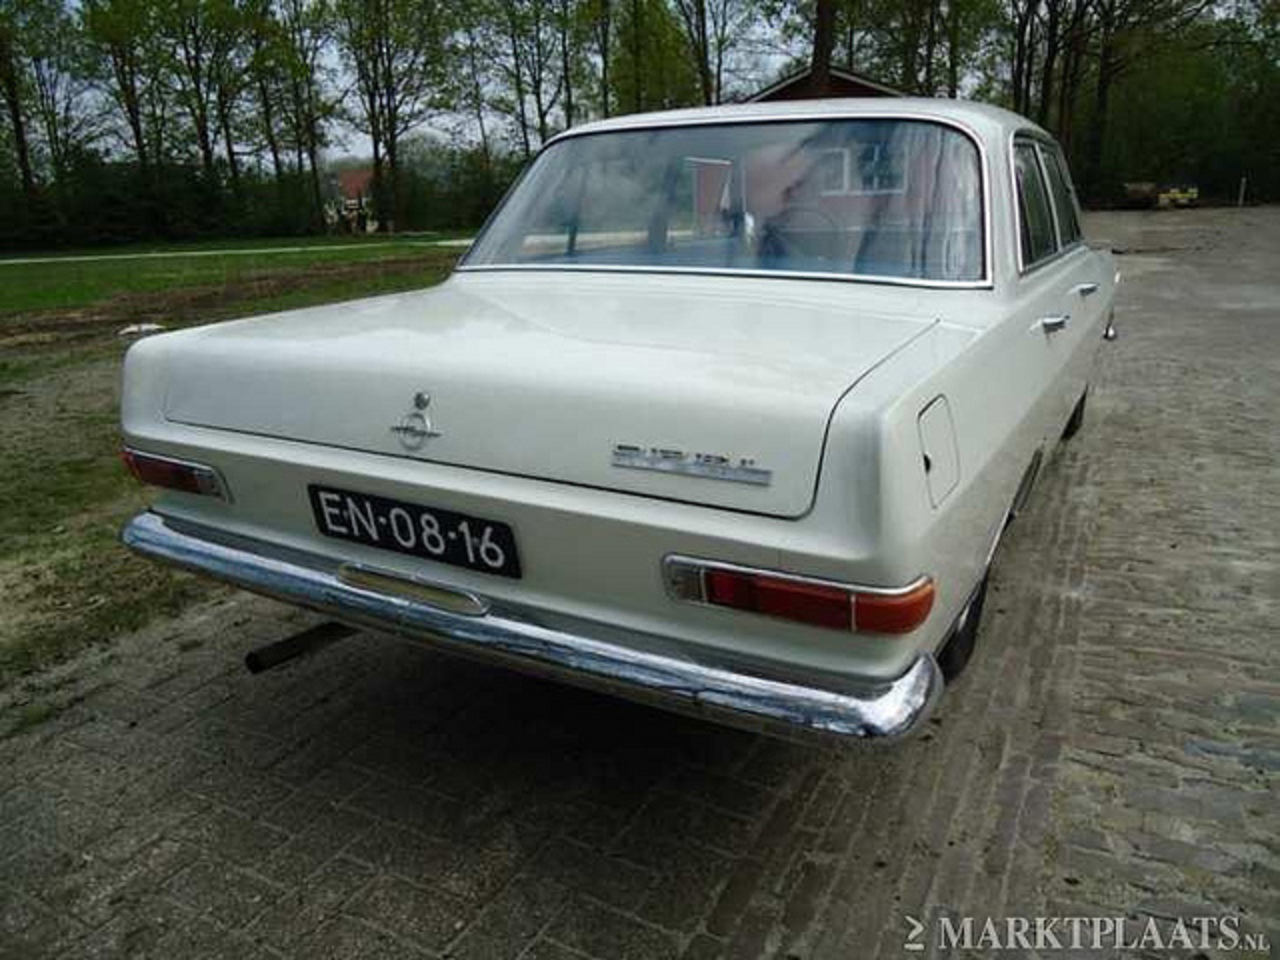 1965 Opel Record 1700 A (EN-08-16) | Flickr - Photo Sharing!